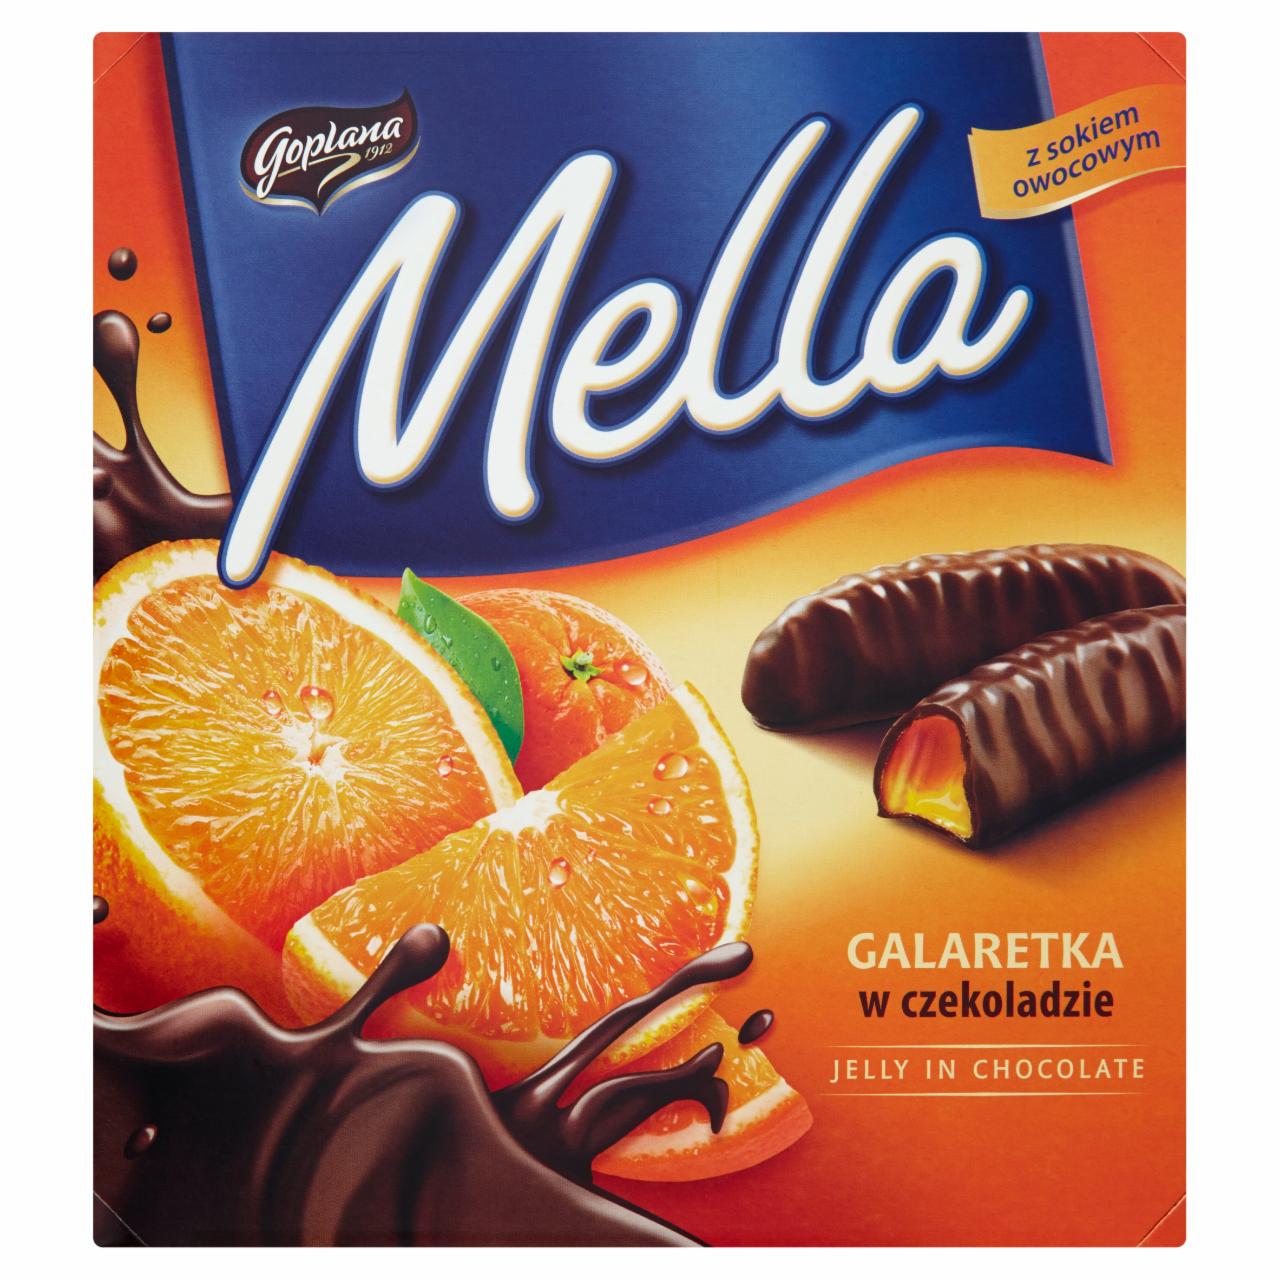 Zdjęcia - Mella Galaretka w czekoladzie o smaku pomarańczowym Goplana